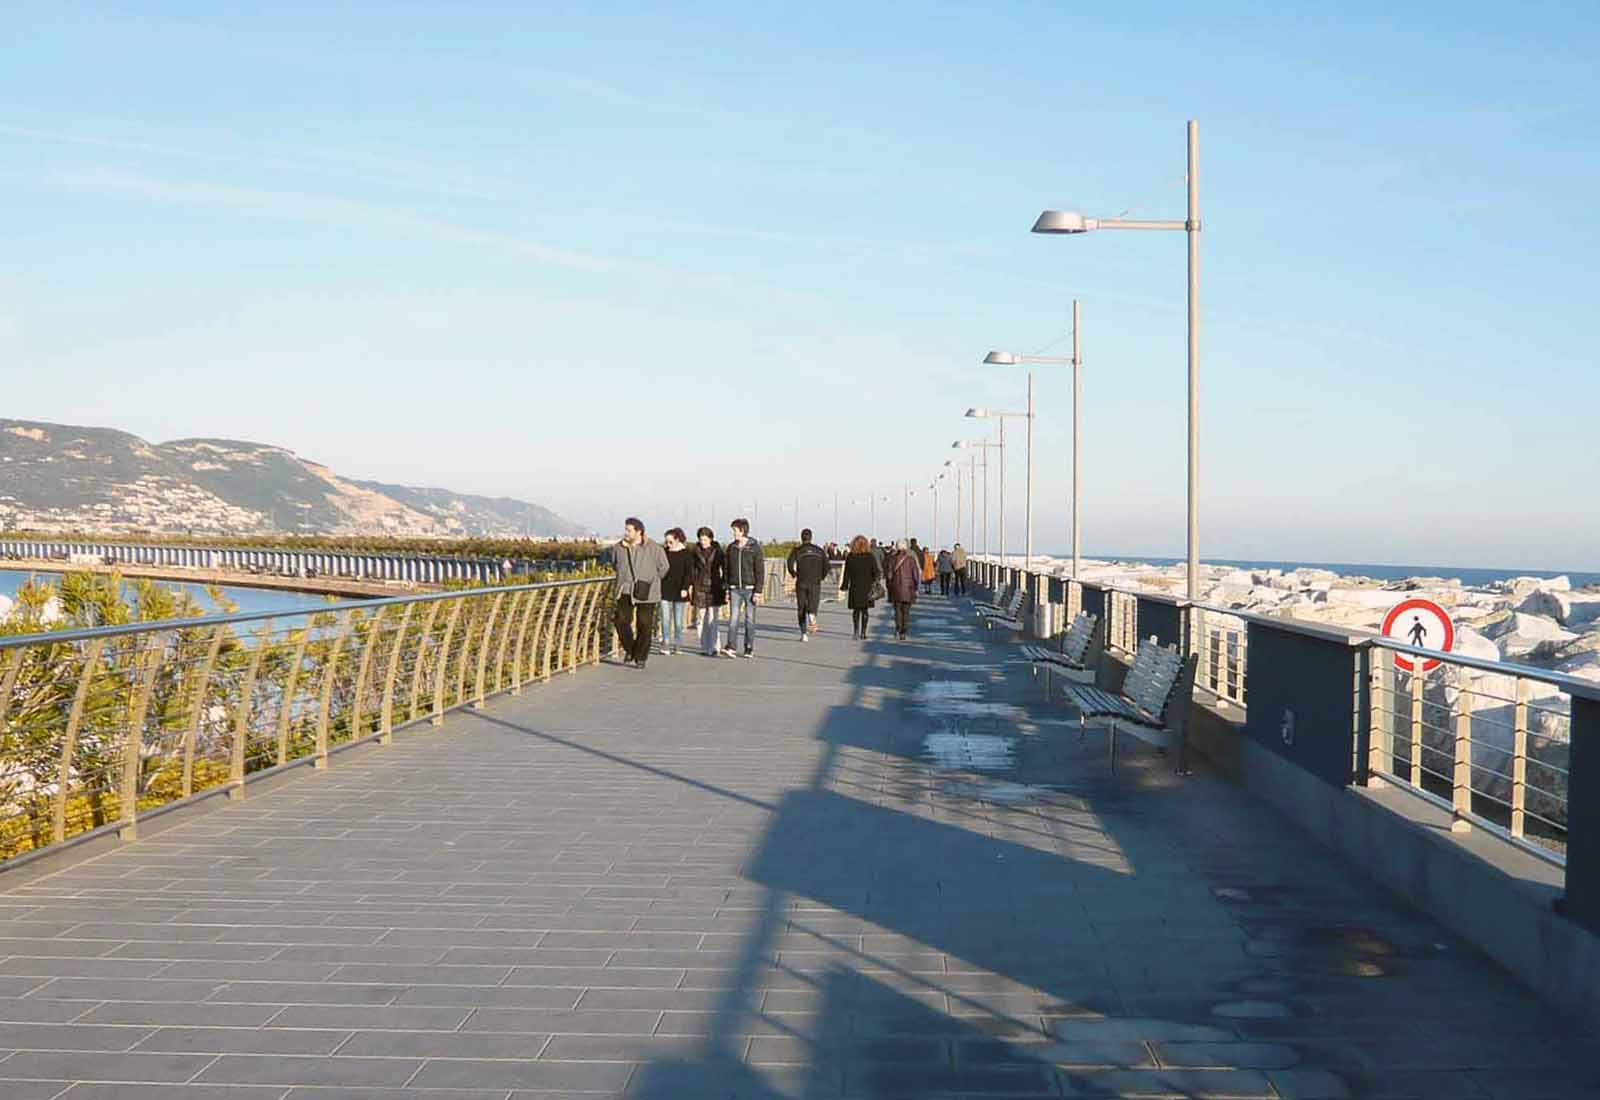 Edifici del nuovo porto di Loano - La passeggiata a mare